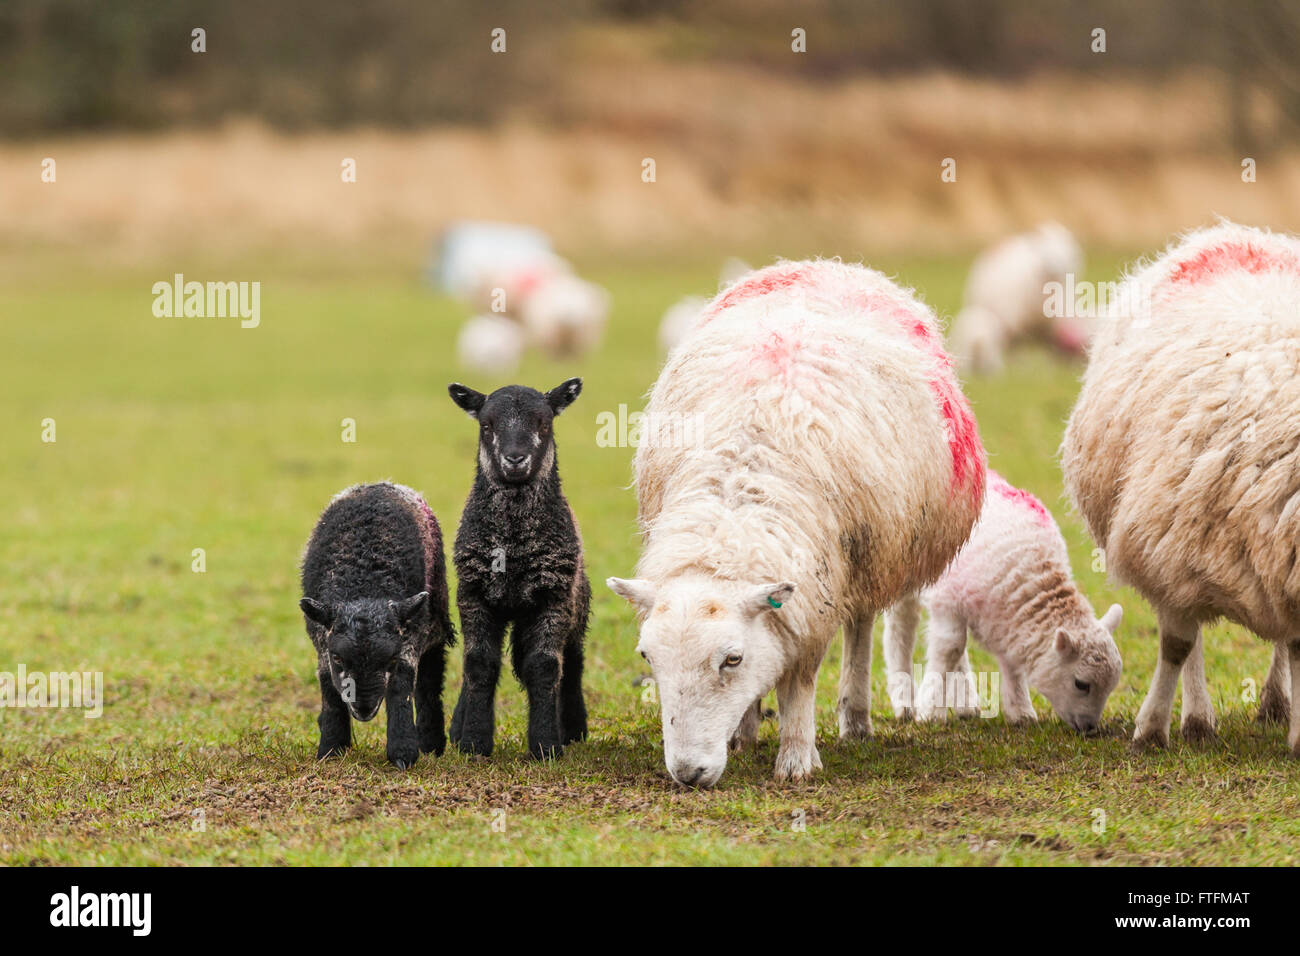 Une brebis noire et deux agneaux dans un champ. Crédit : Ian Jones/Alamy Live News Banque D'Images